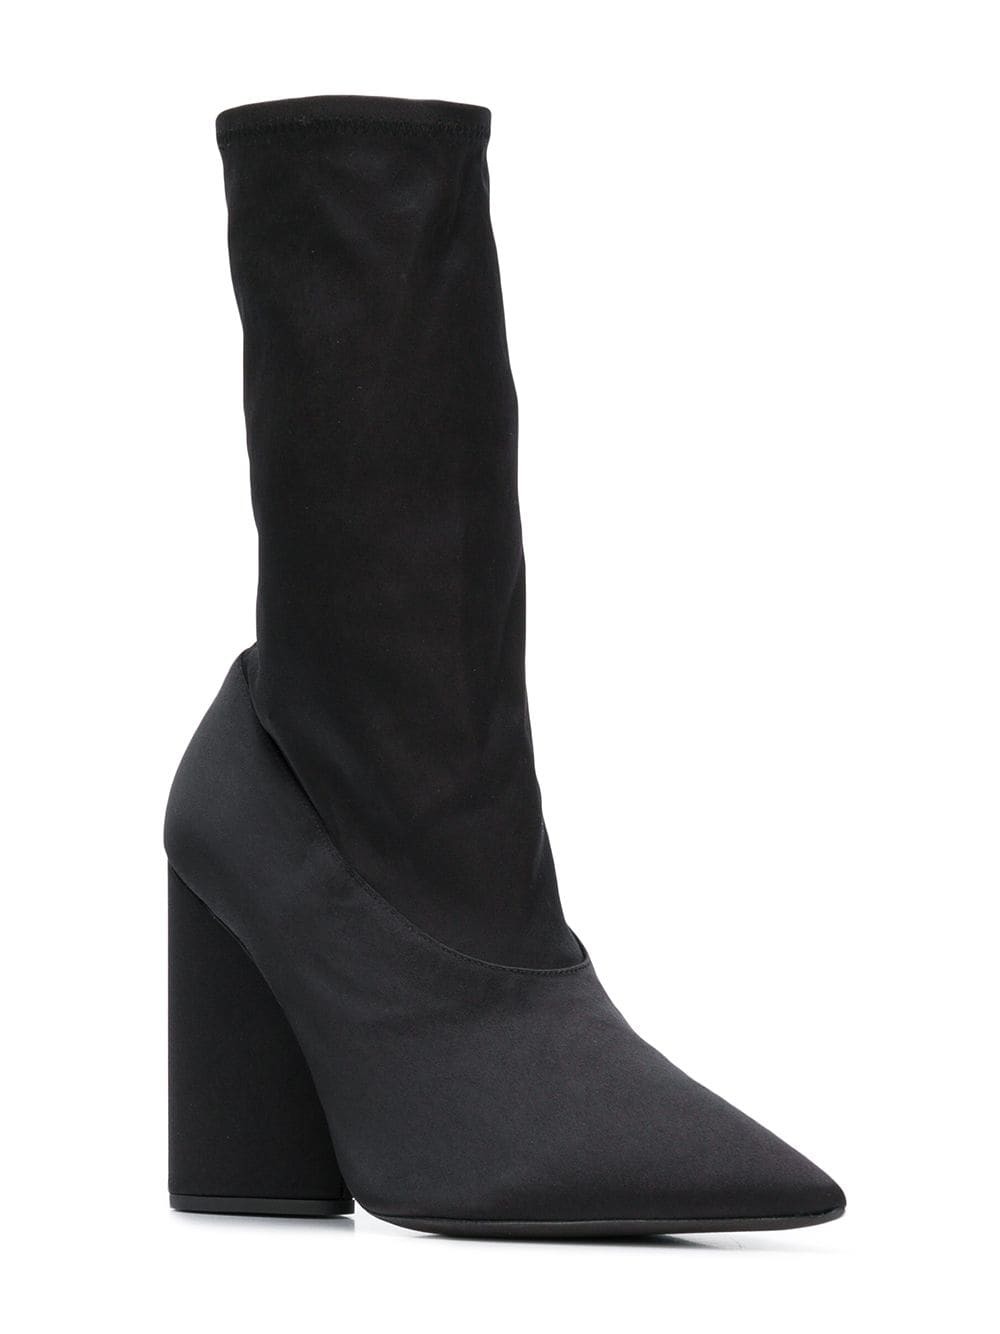 white block heel sock boots